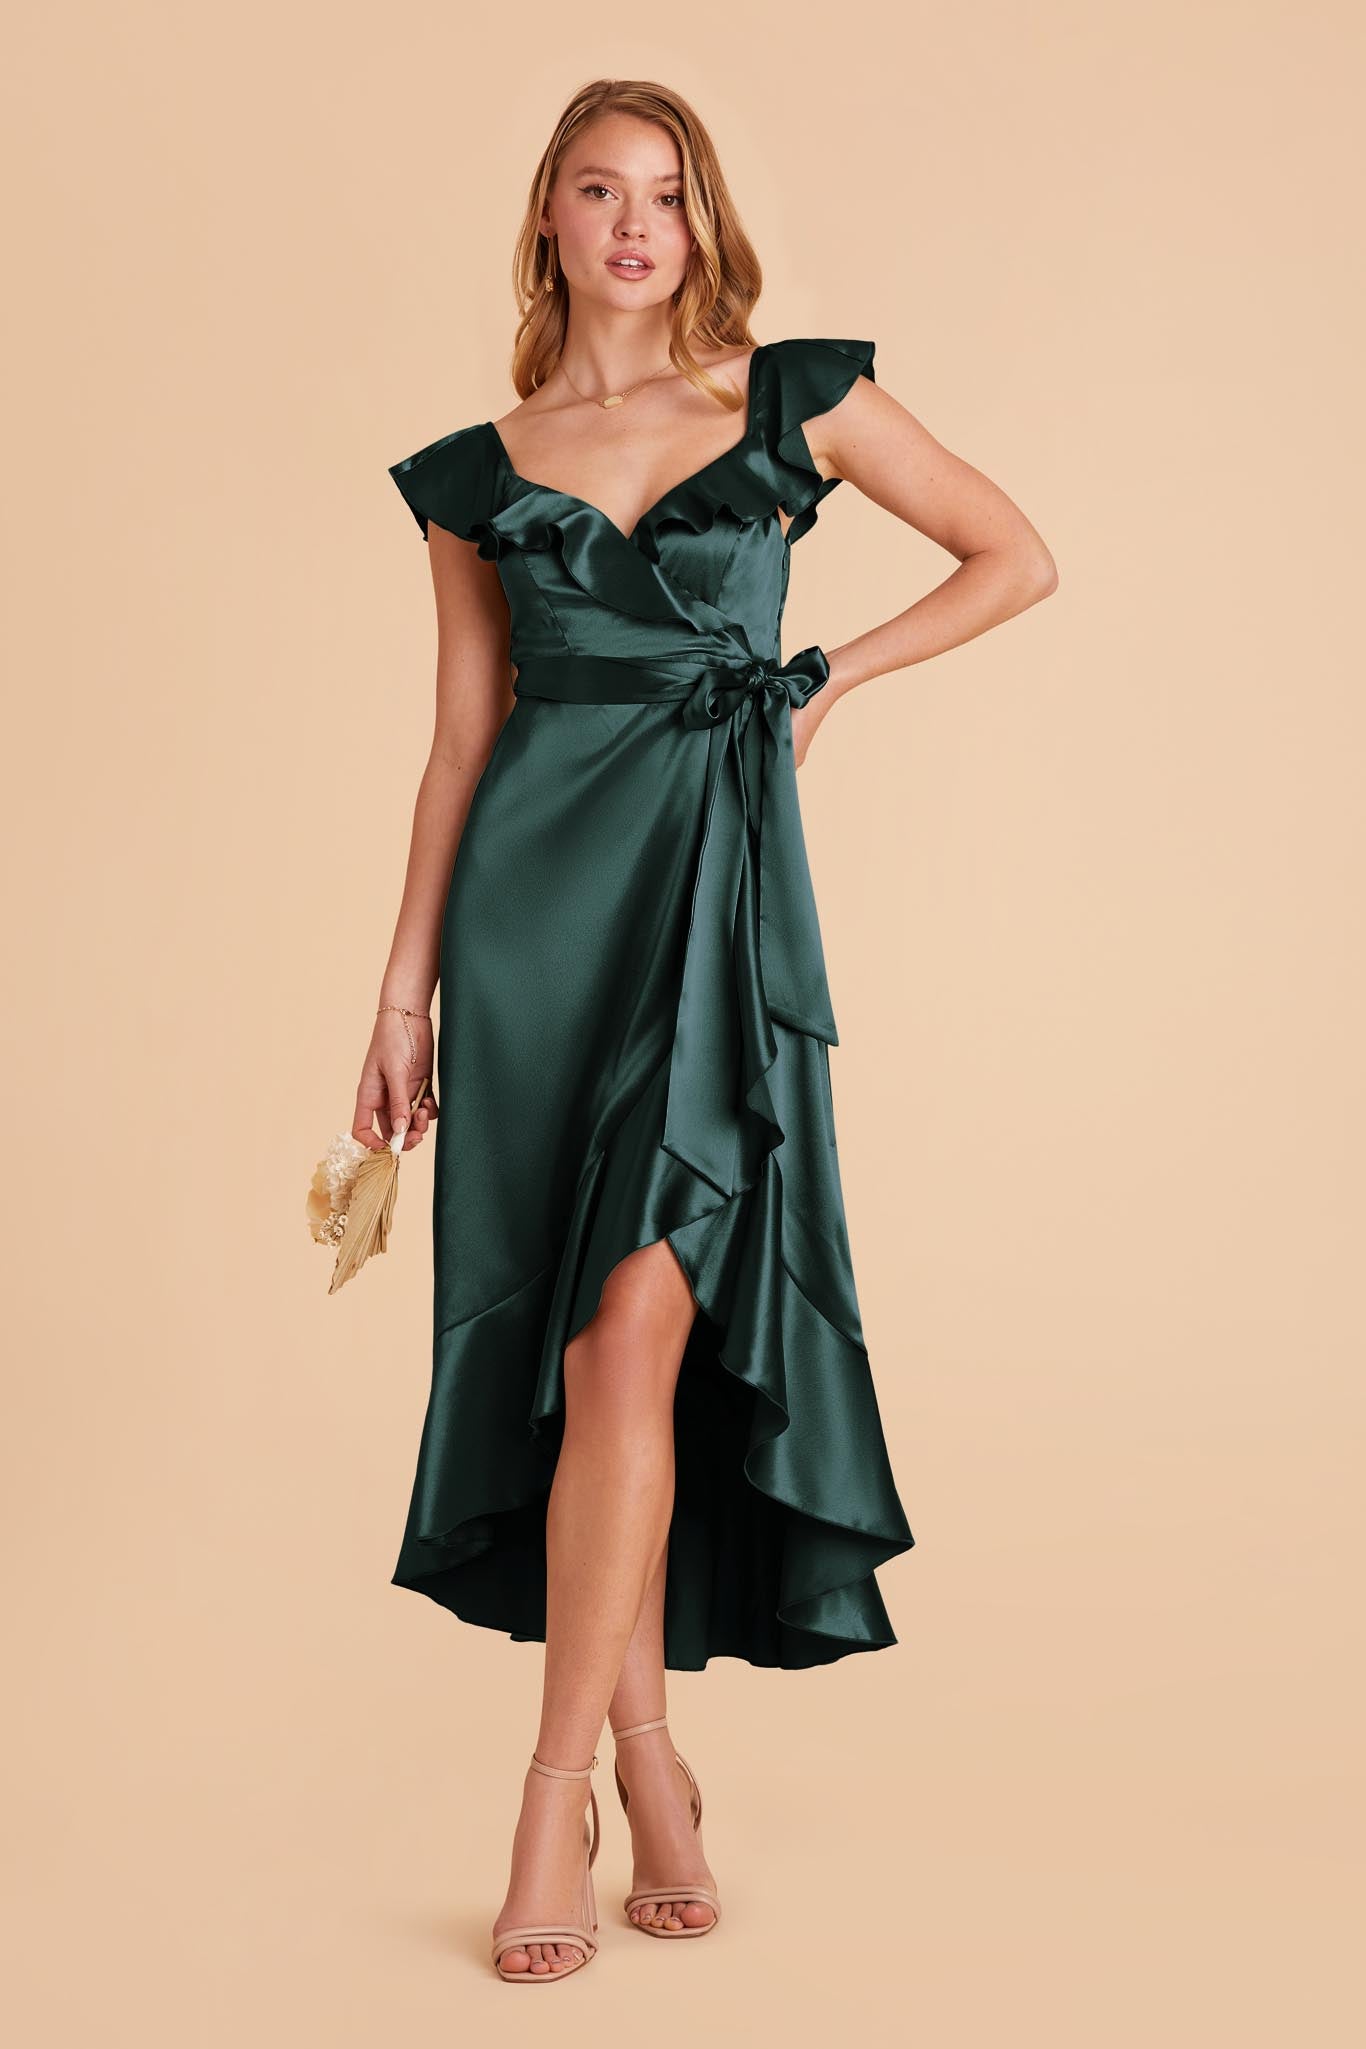 Emerald James Satin Midi Dress by Birdy Grey